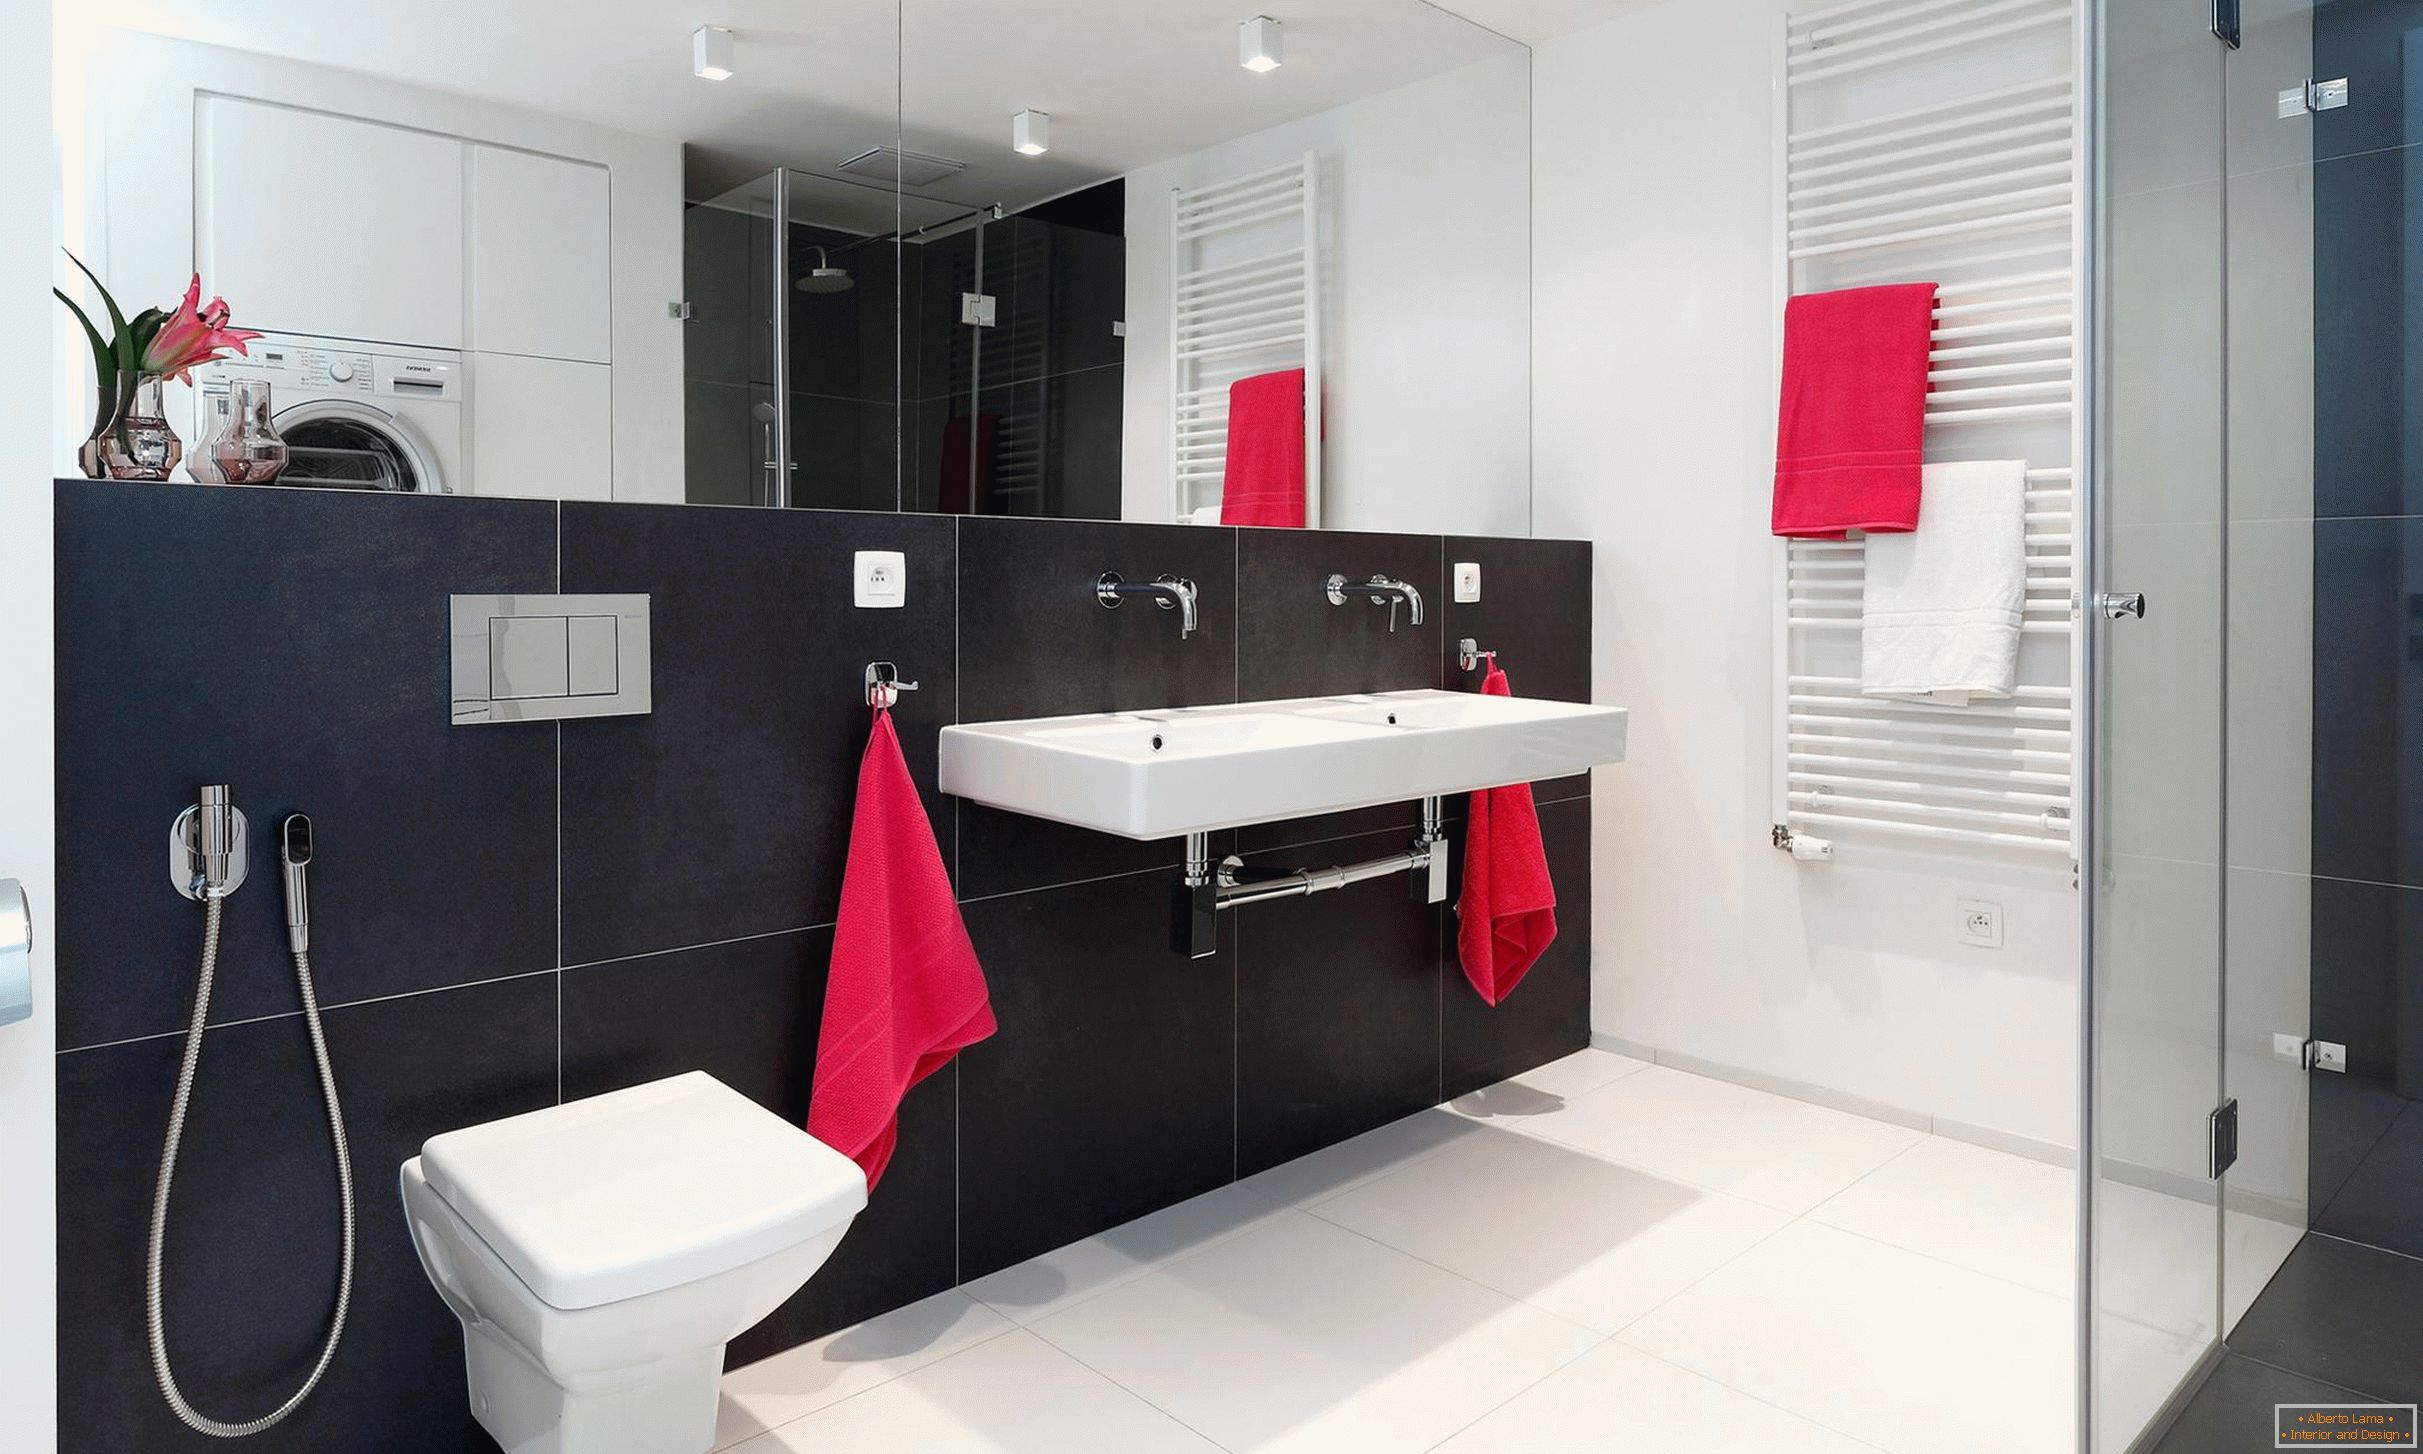 Rot, Weiß und Schwarz im Design des Badezimmers